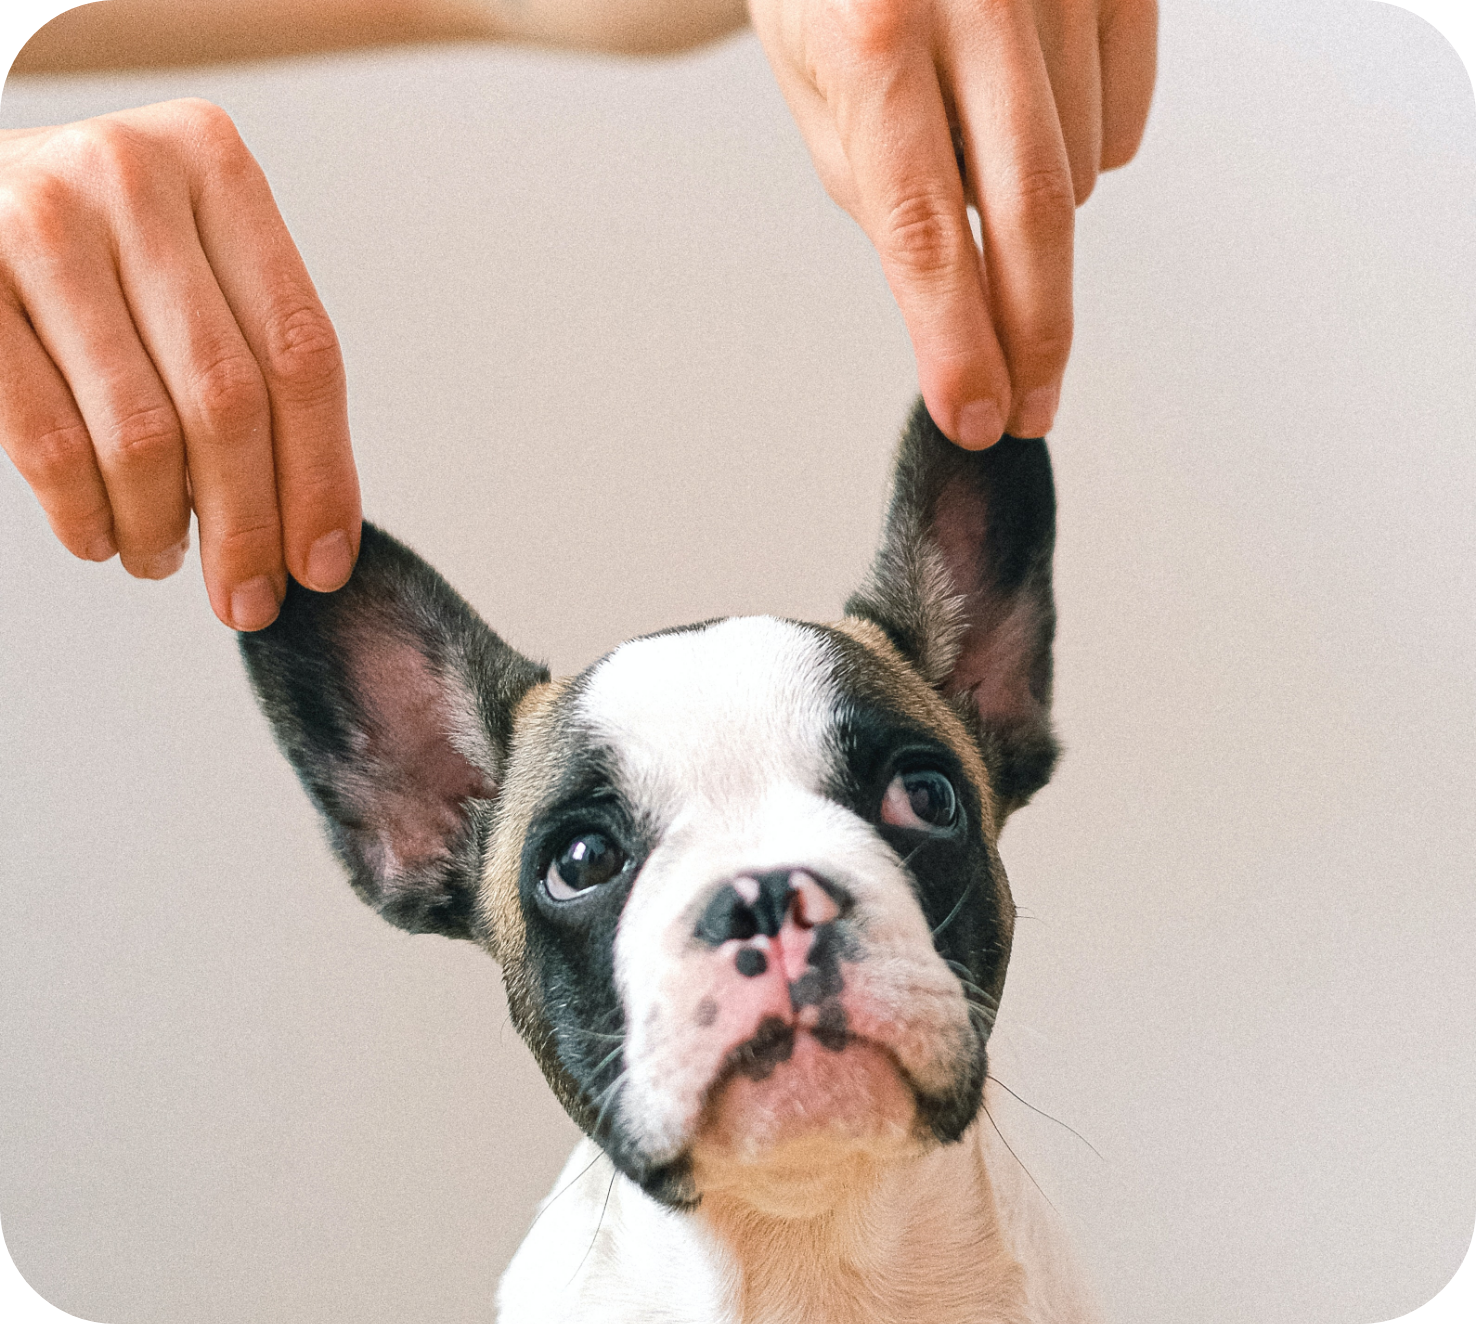 La photo marrante d'un chien à qui on lève les oreilles vers le haut